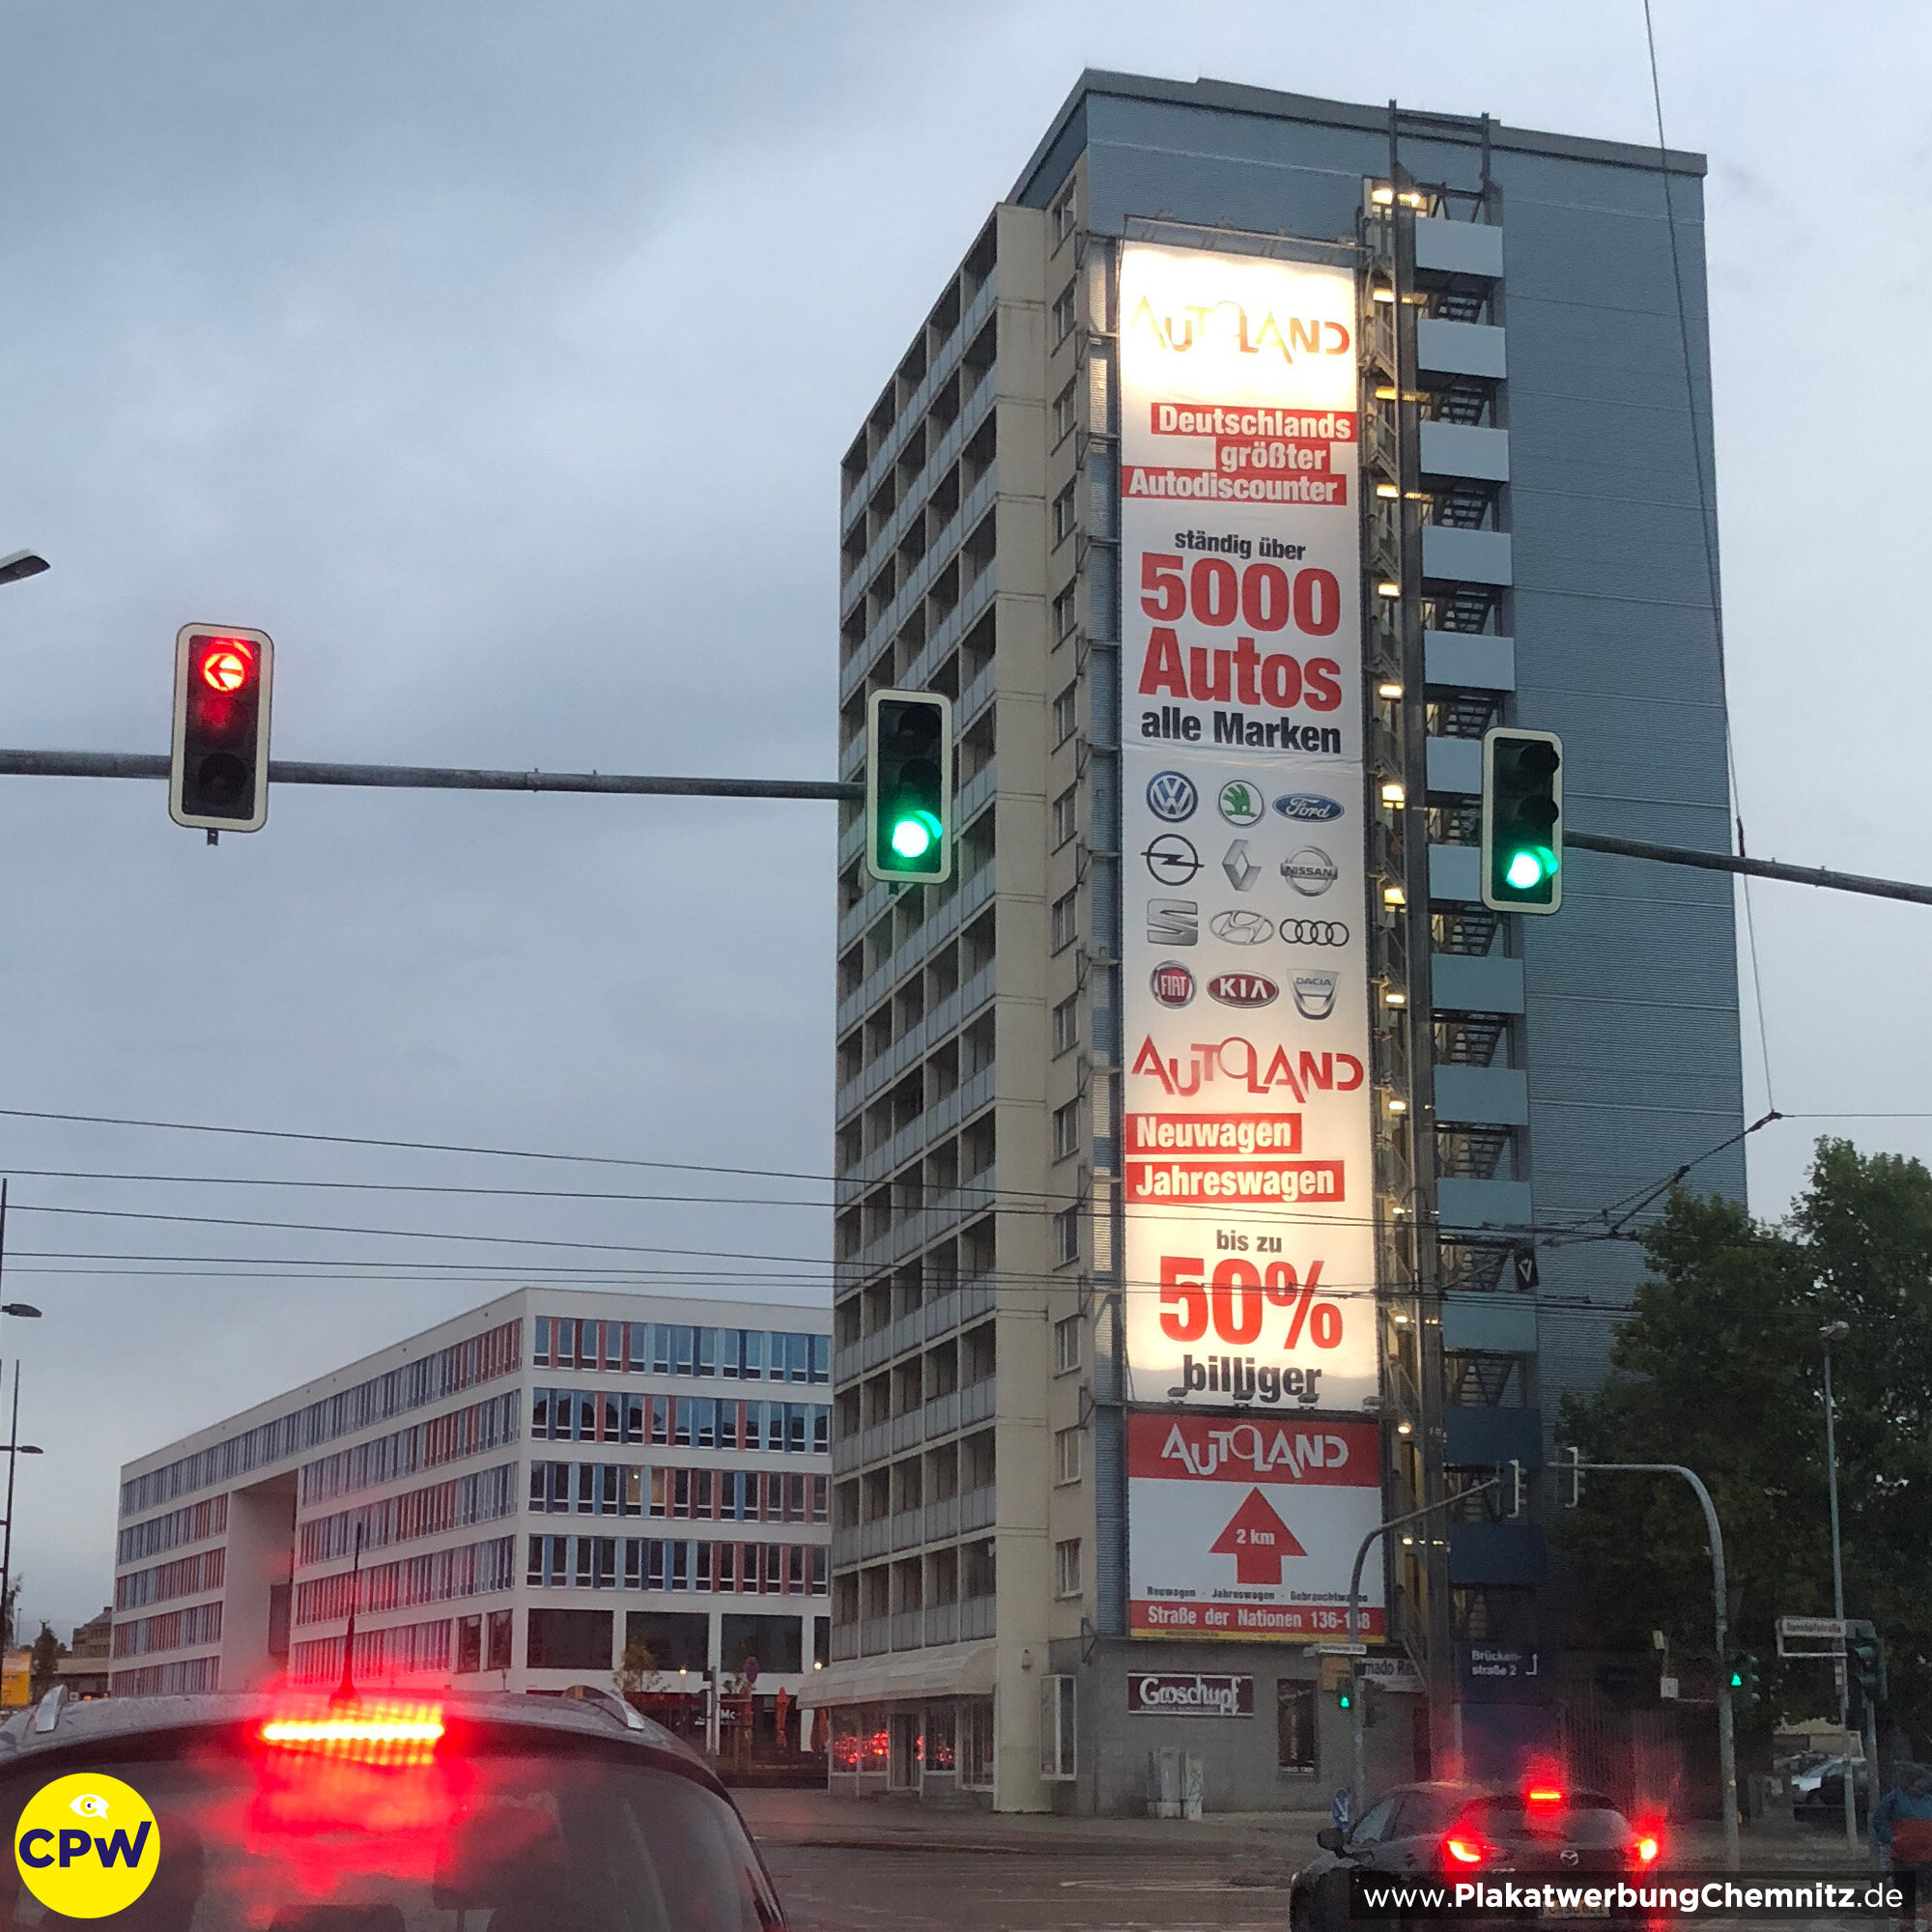 CPW Plakatwerbung Chemnitz - Autoland